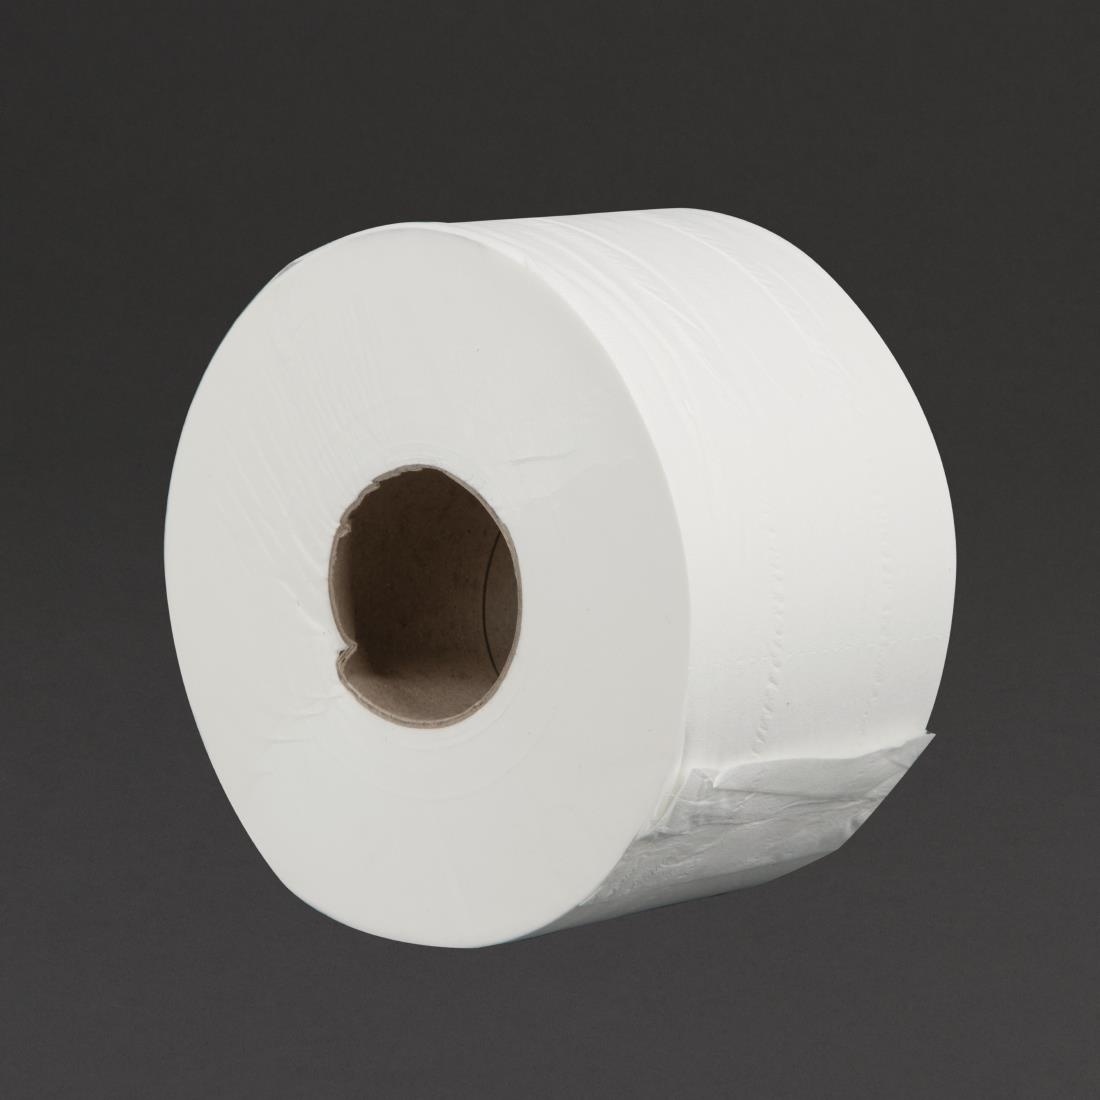 Papier toilette feuille à feuille 2 plis carton de 36